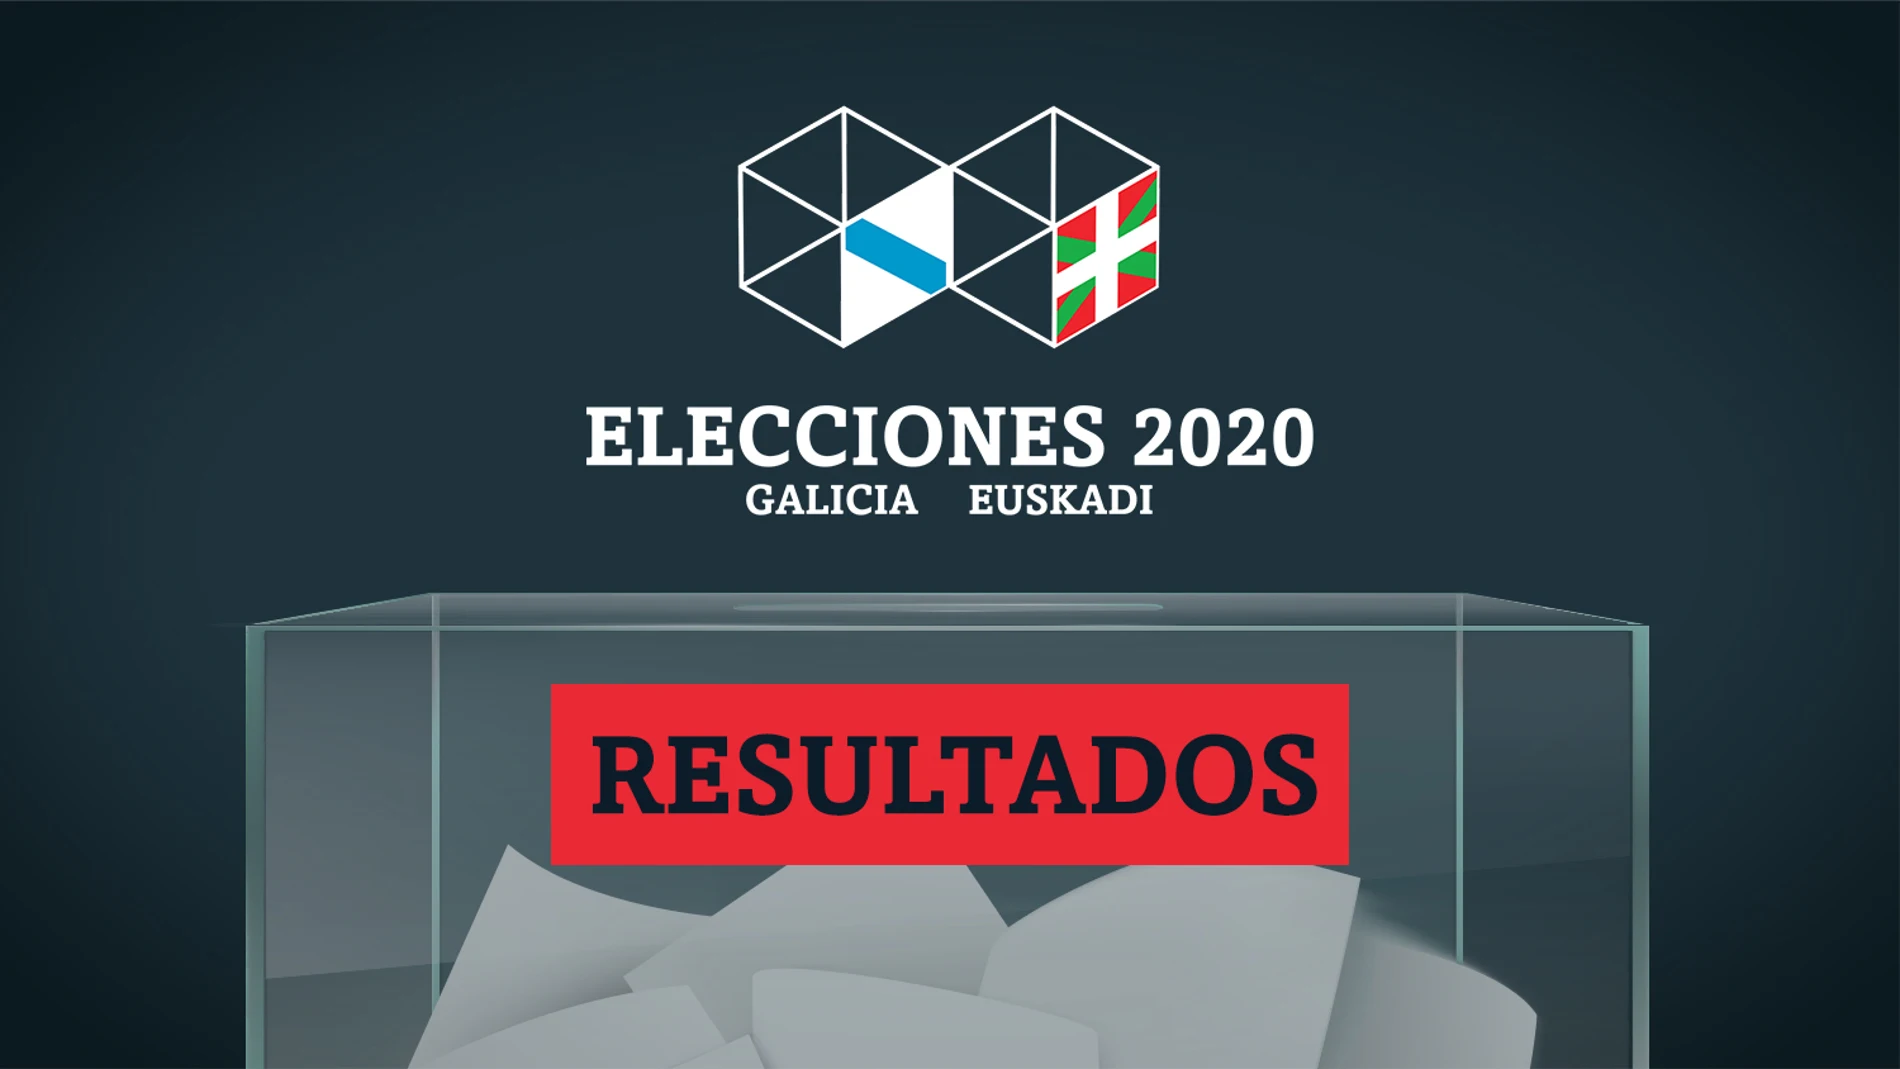 Resultado y escrutinio de las elecciones en Galicia y País Vasco